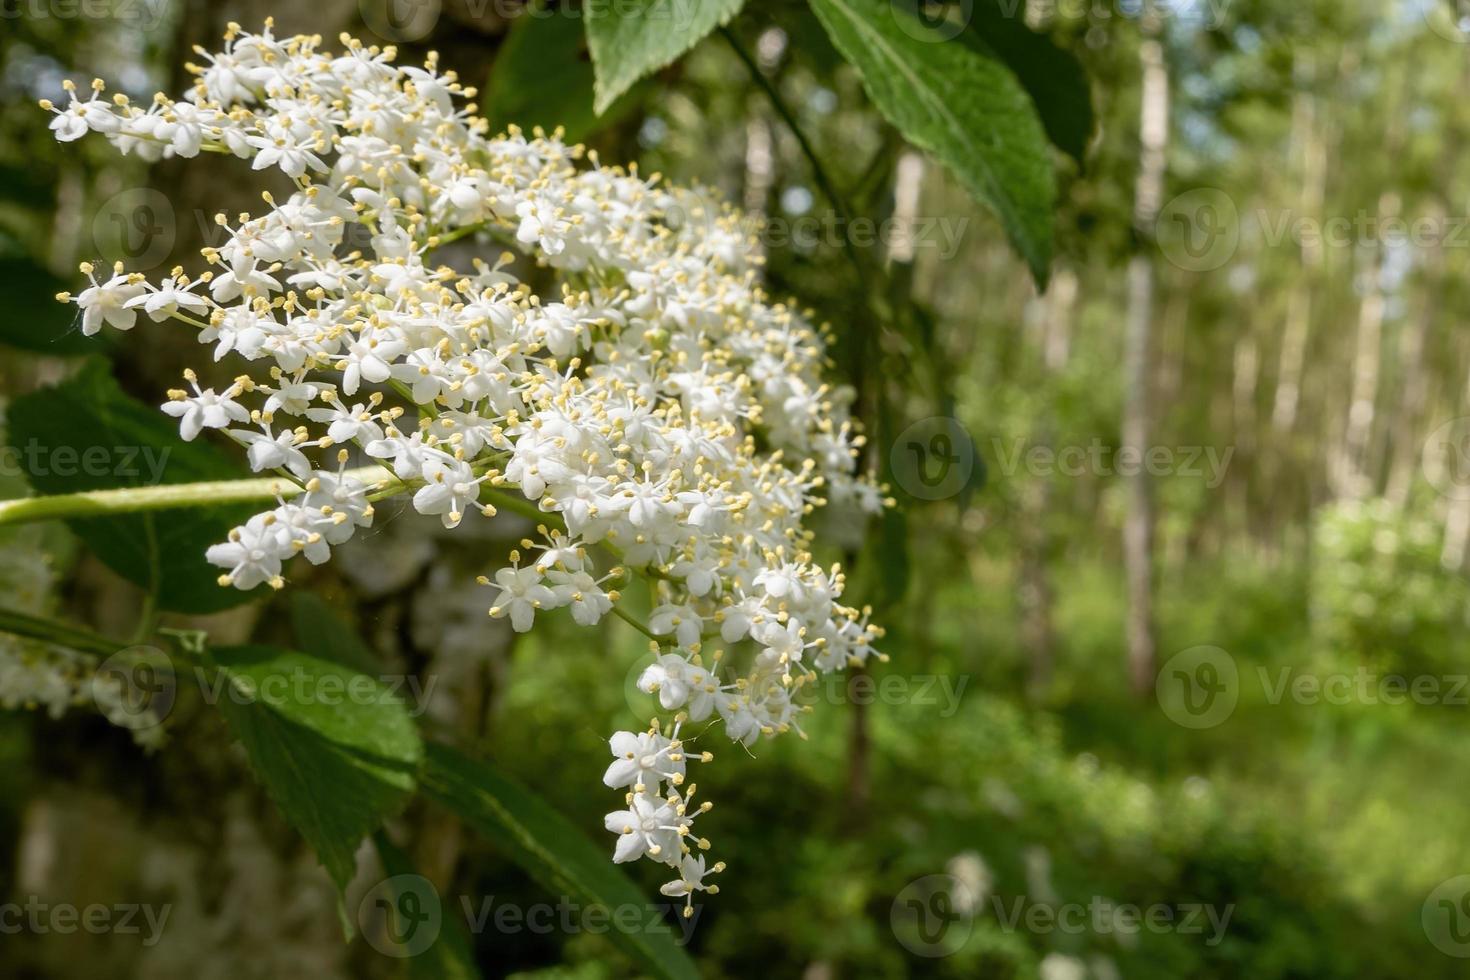 fiore bianco del cespuglio di sambuco all'inizio dell'estate foto